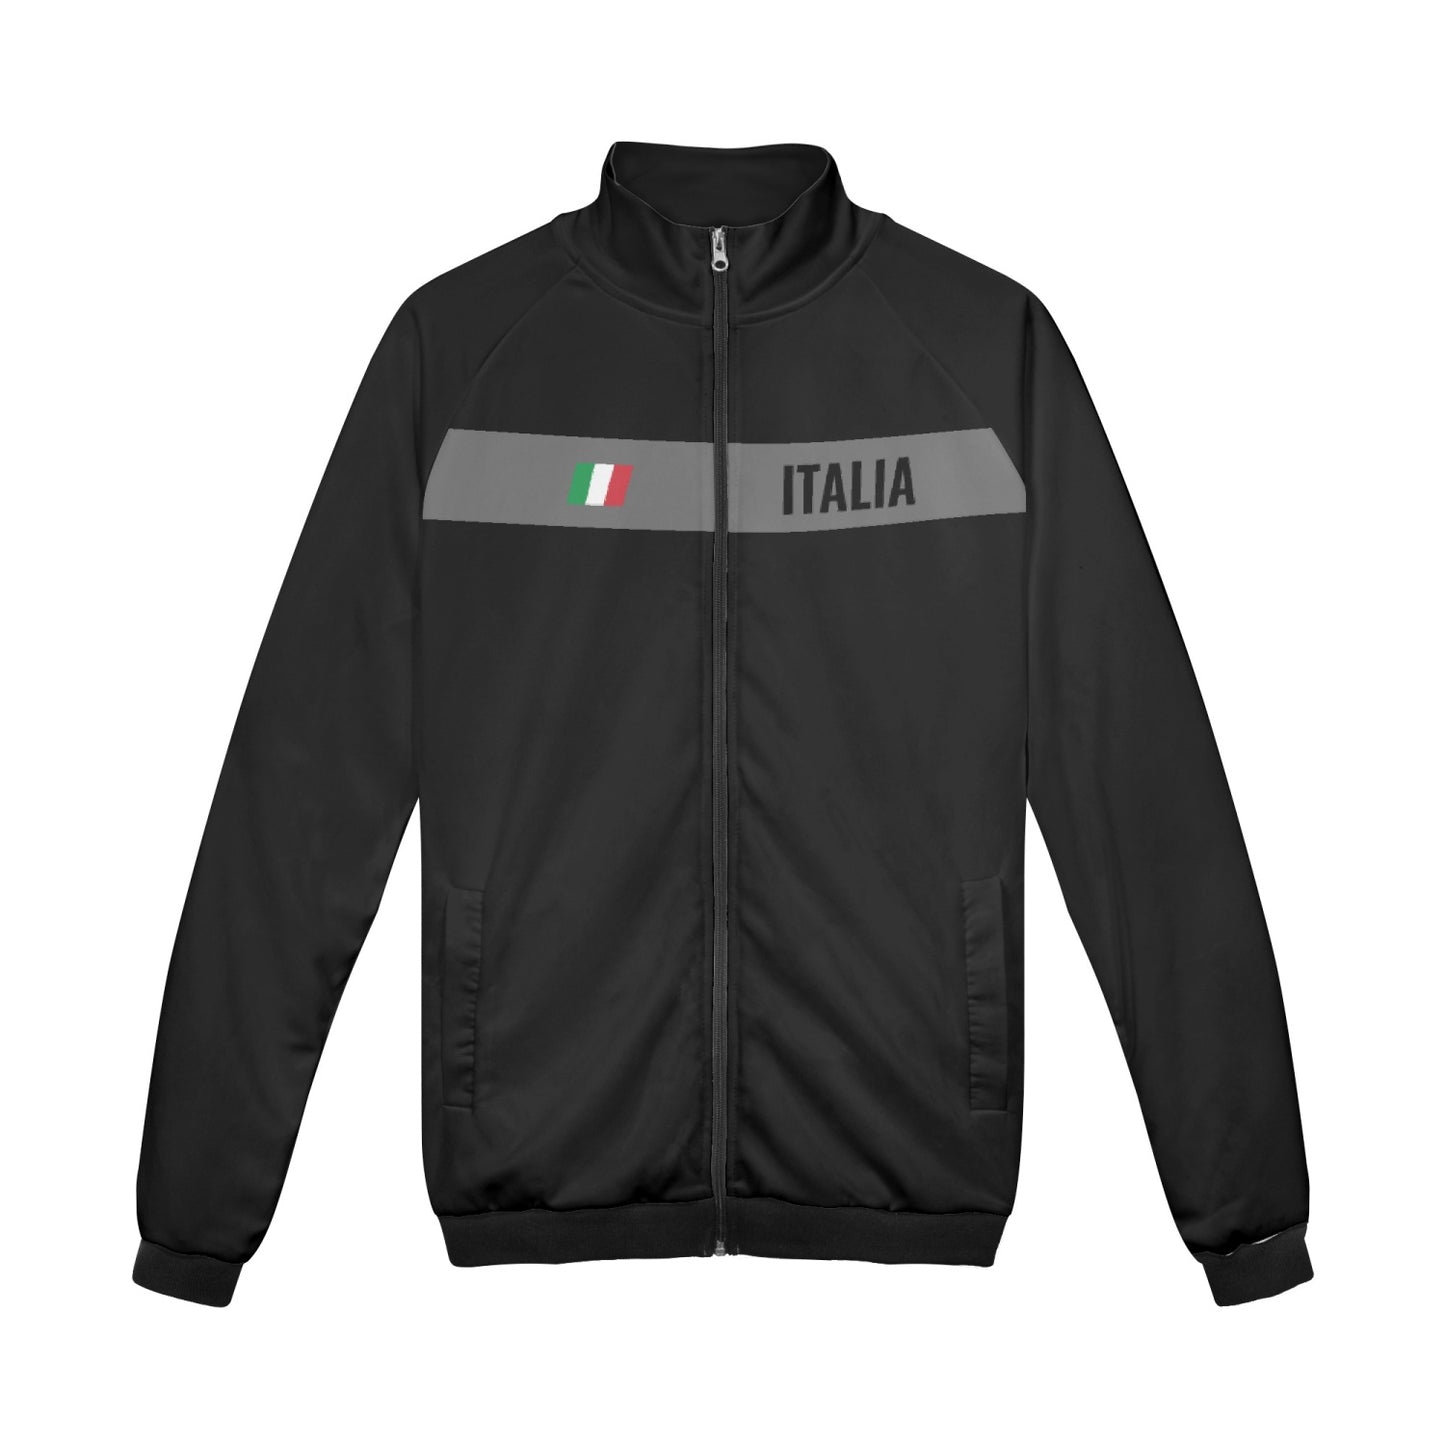 Italia zip Jacket black